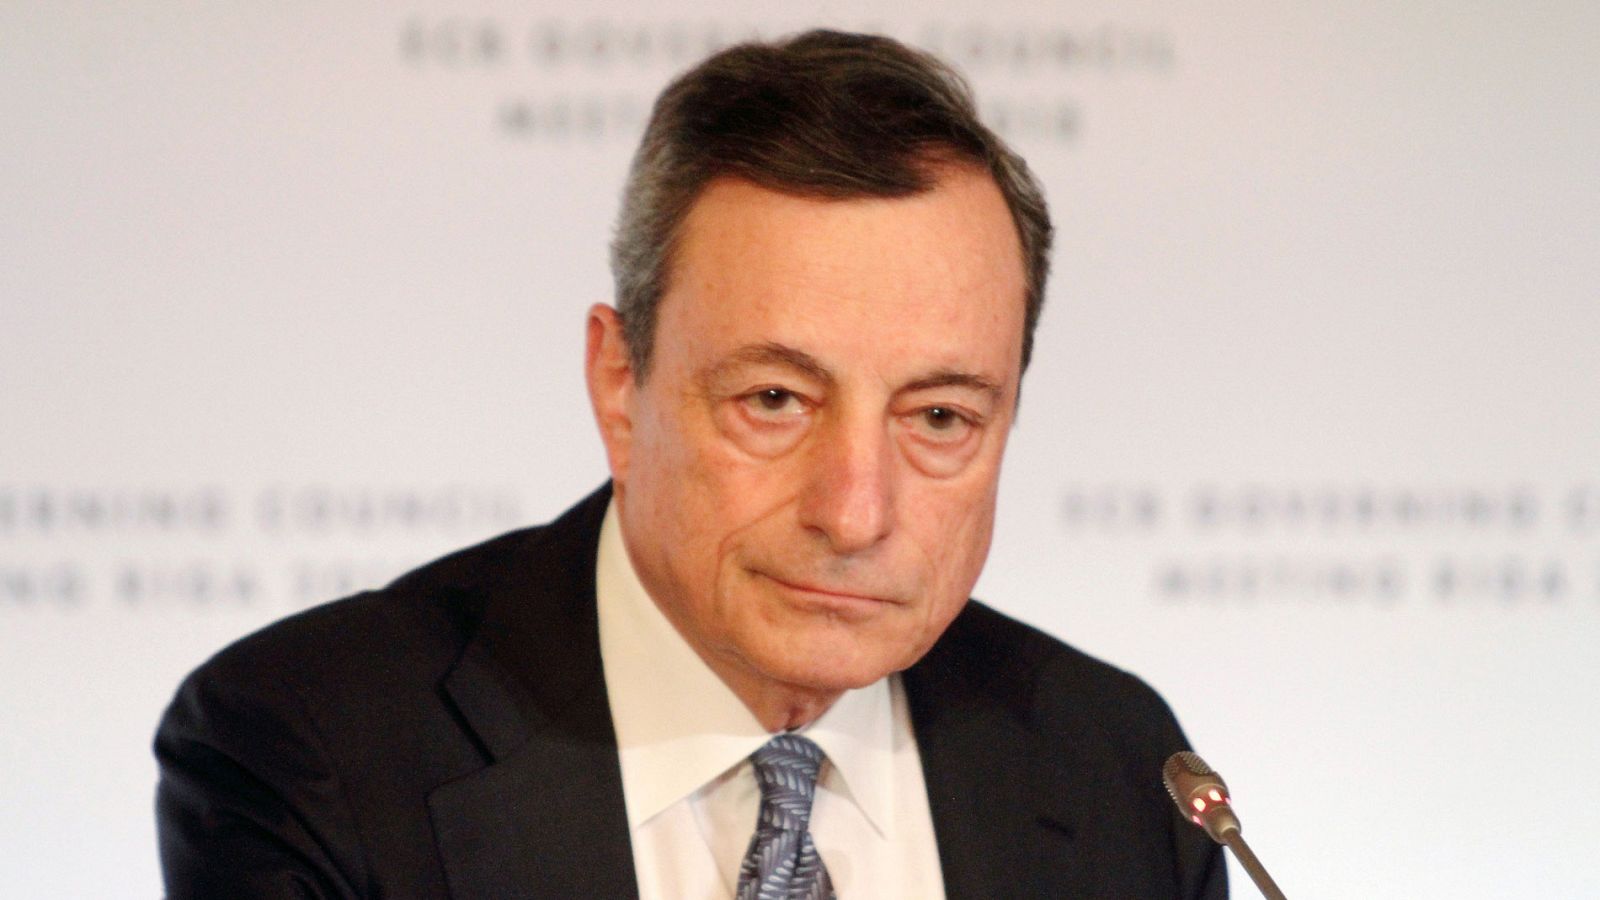 El BCE pone fin a la era de compras de deuda, aunque aleja la subida de tipos